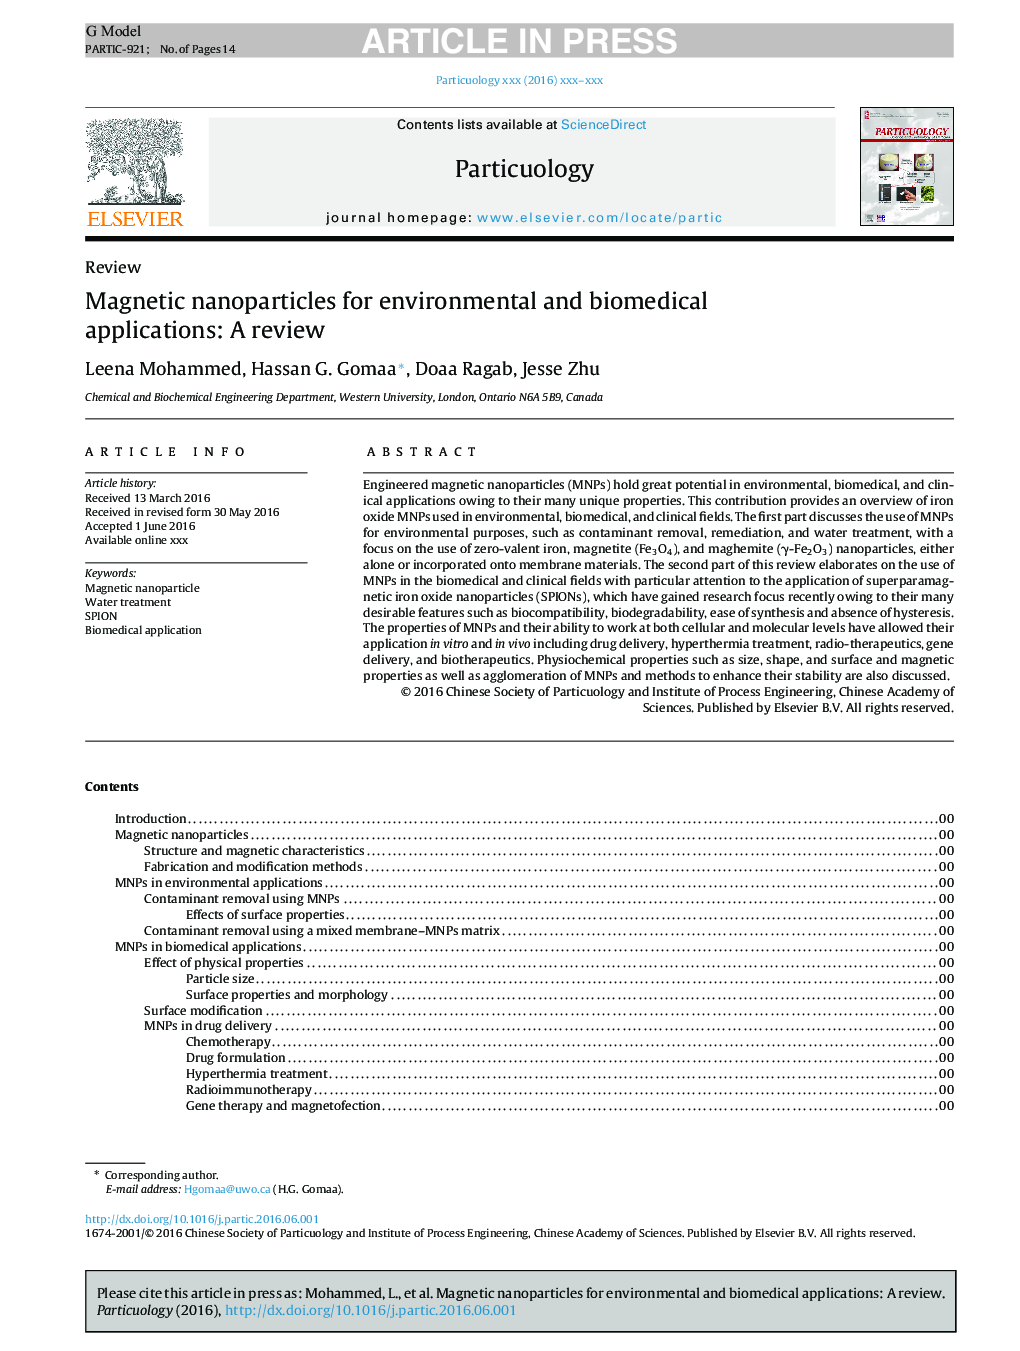 نانوذرات مغناطیسی برای کاربردهای زیست محیطی و محیطی: یک بررسی 